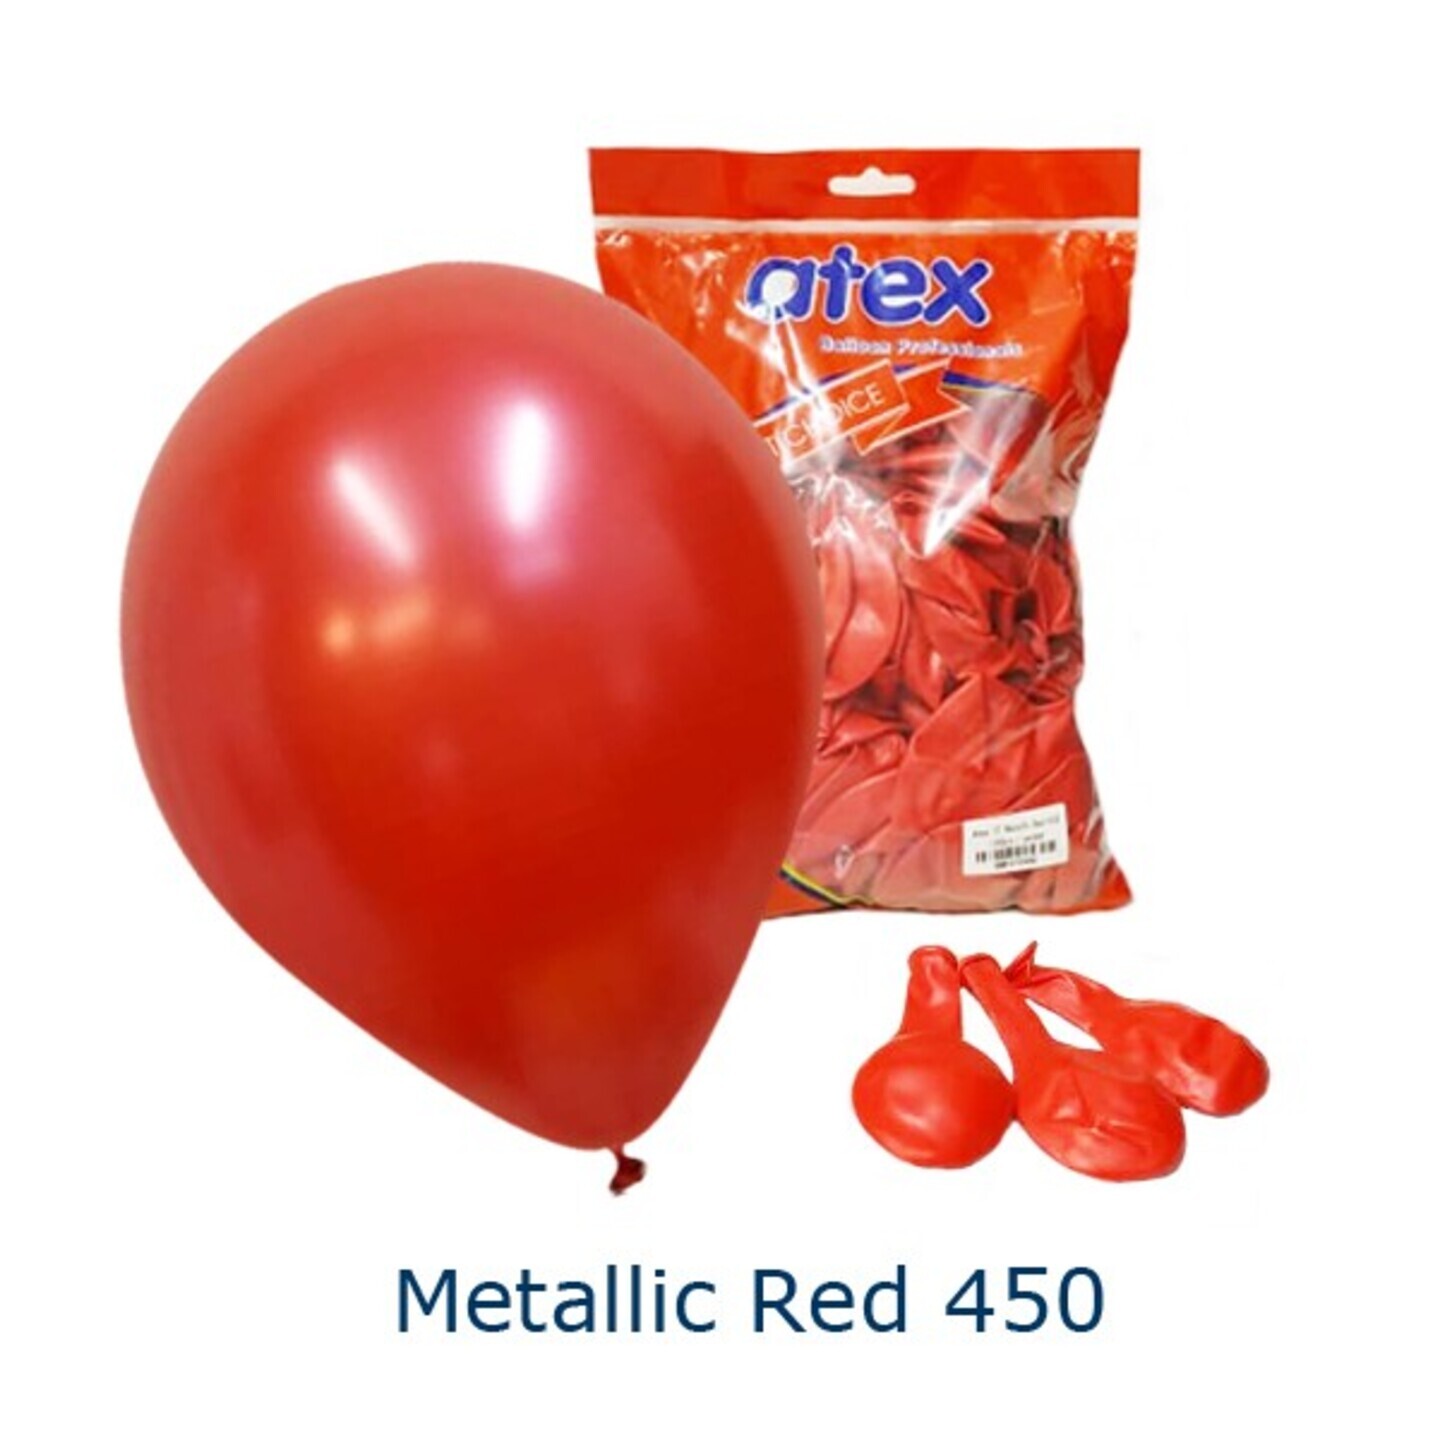 Metallic Red 450